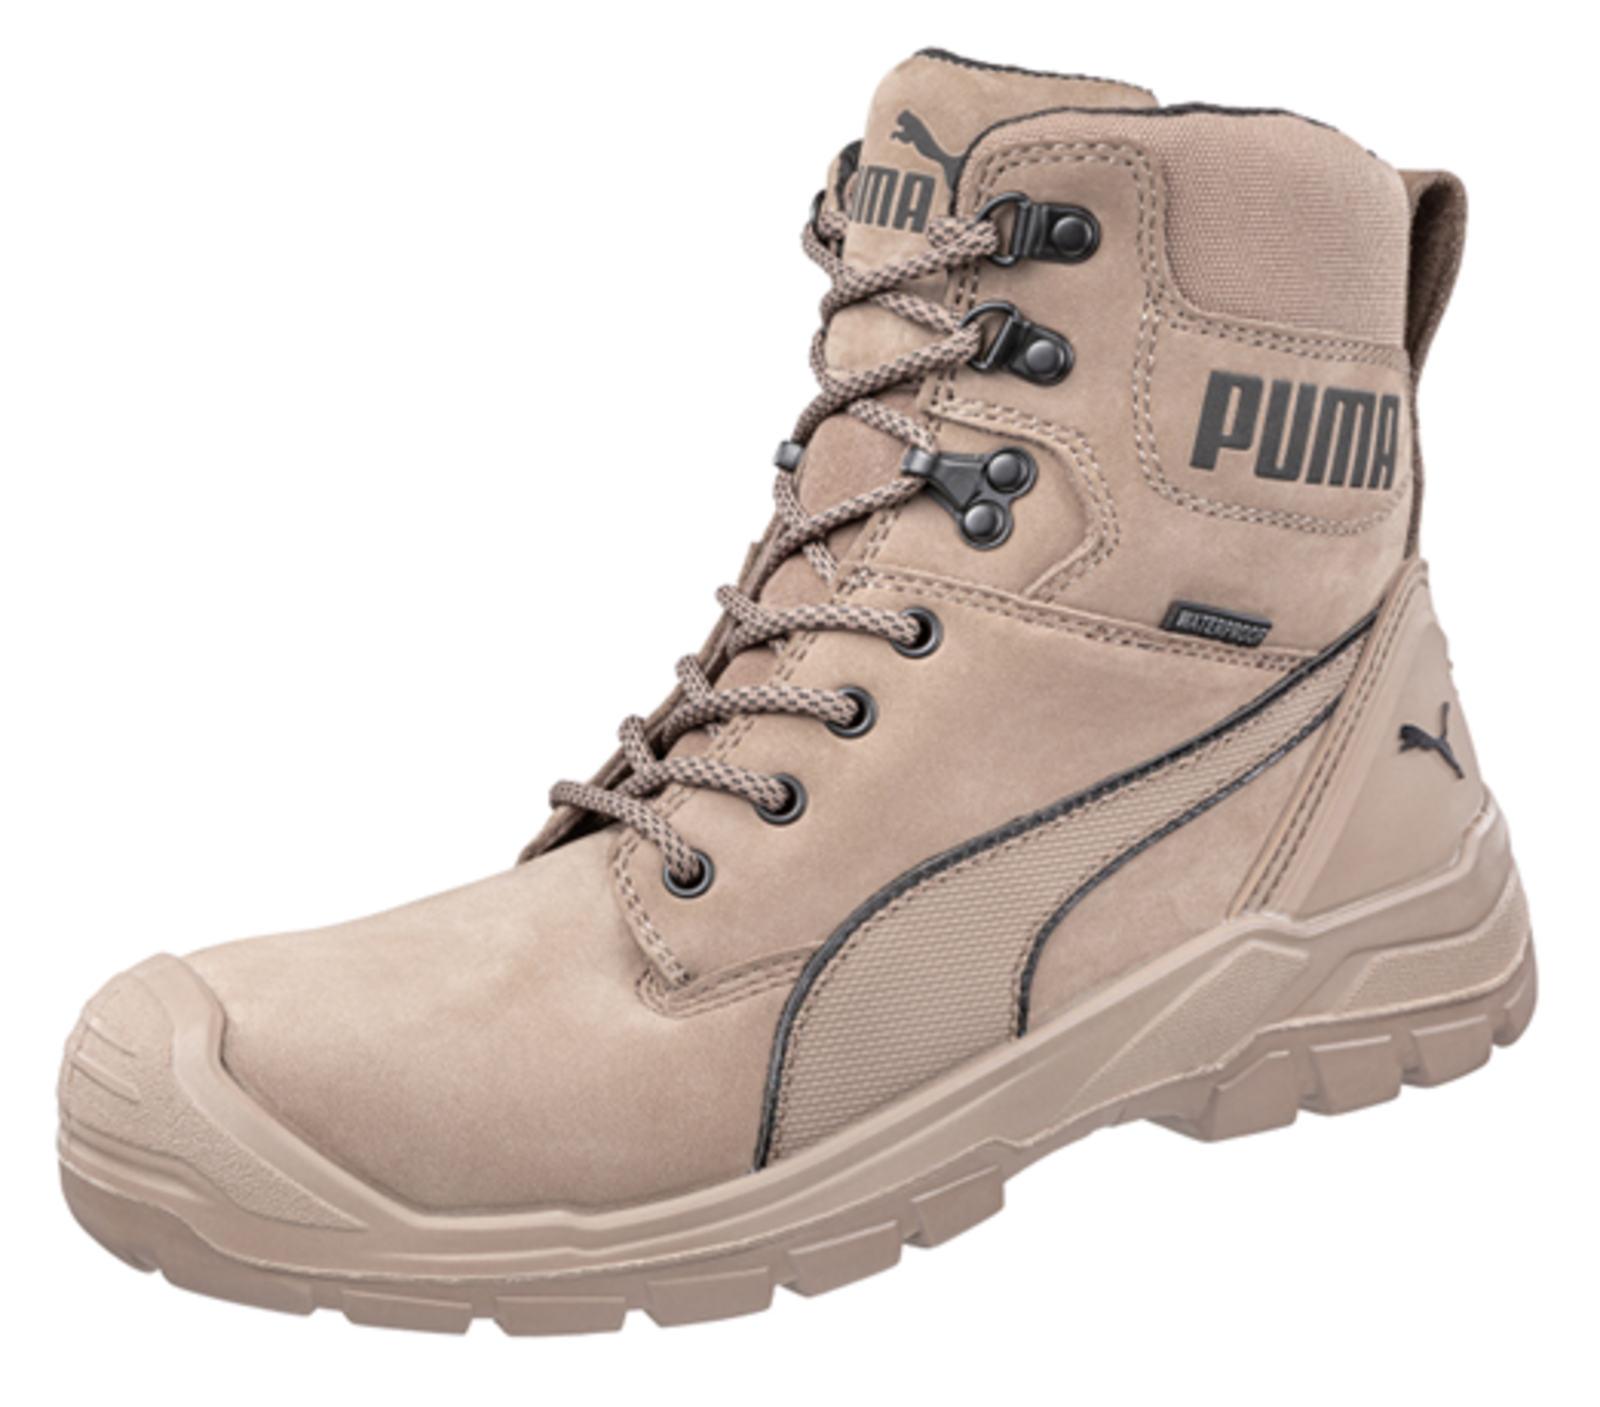 Bezpečnostná obuv Puma Conquest Stone S3 - veľkosť: 42, farba: svetlohnedá